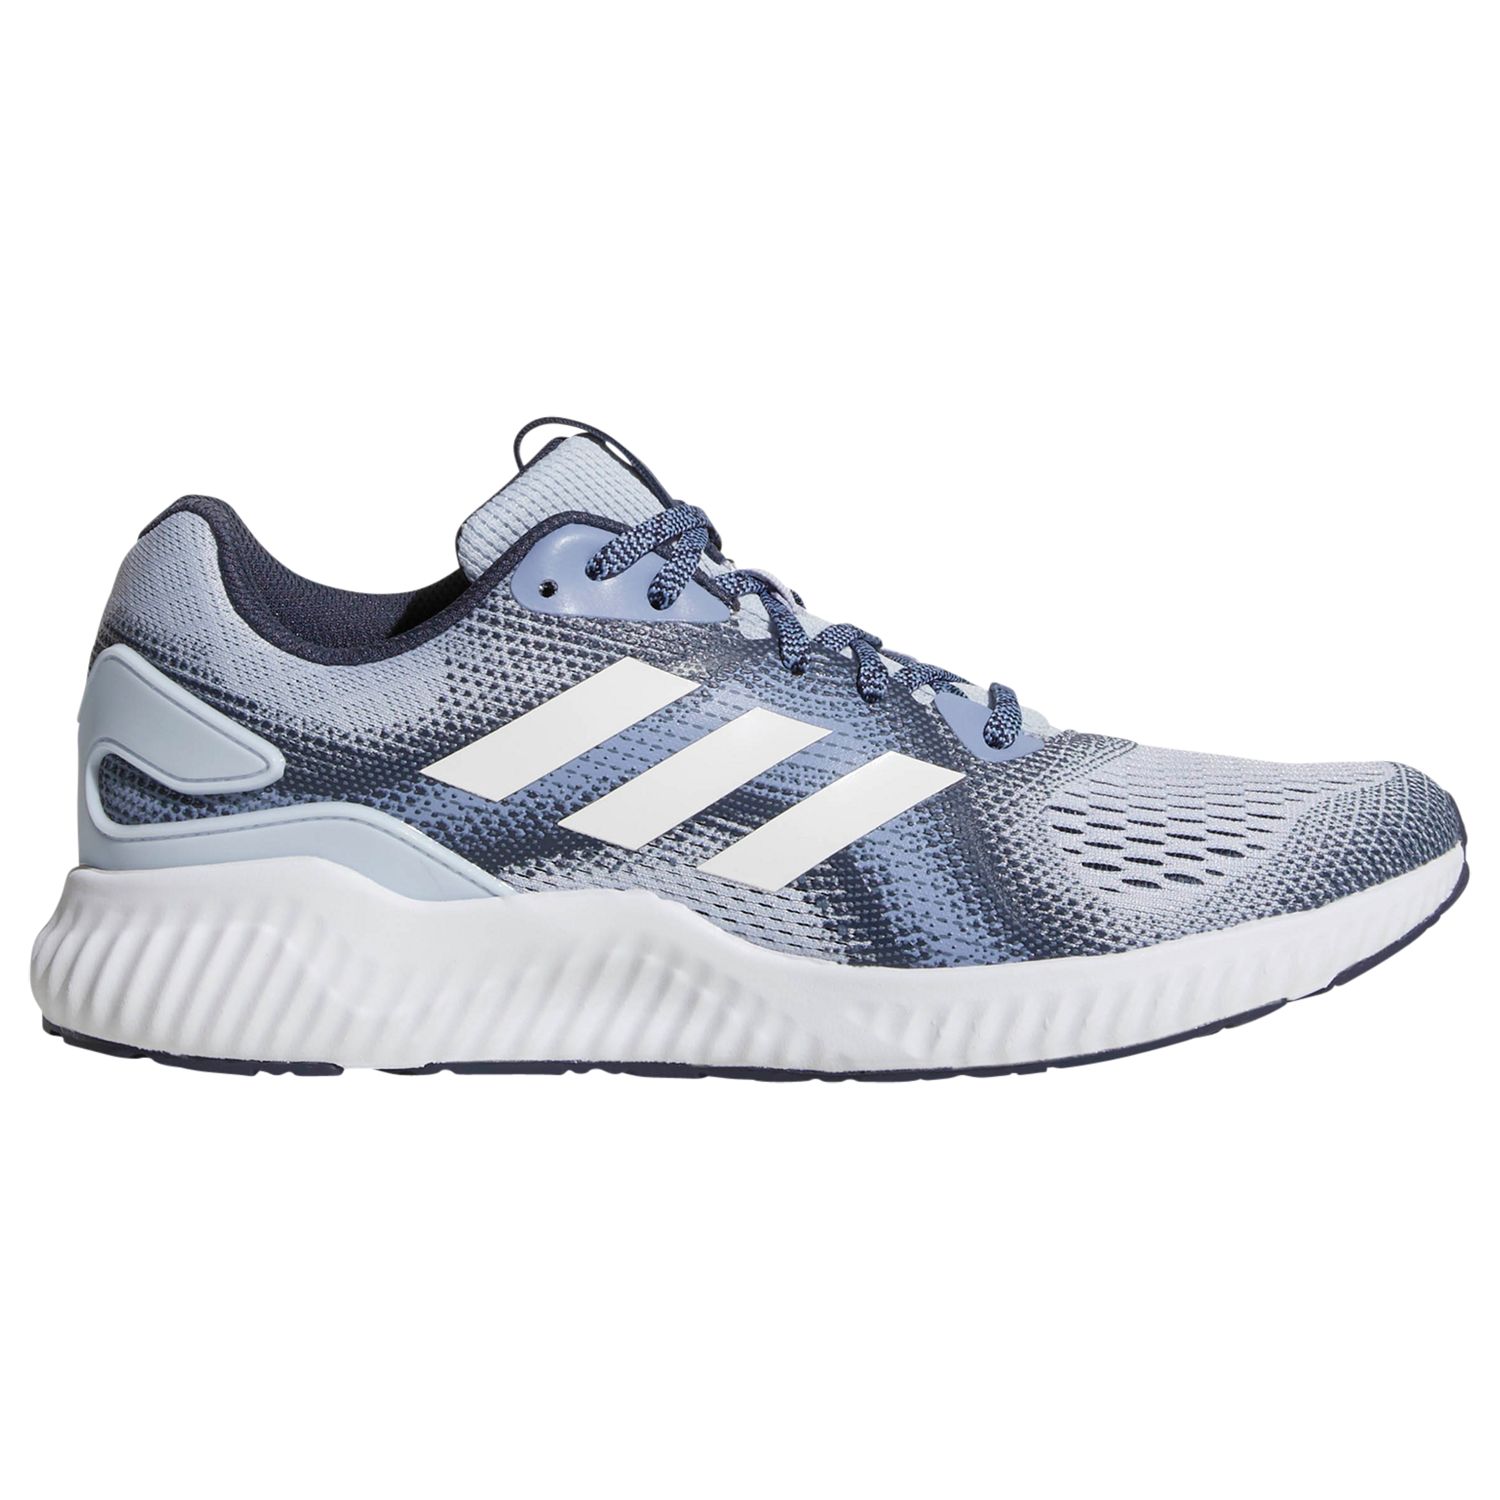 adidas Aerobounce Women's Running Shoes, Blue